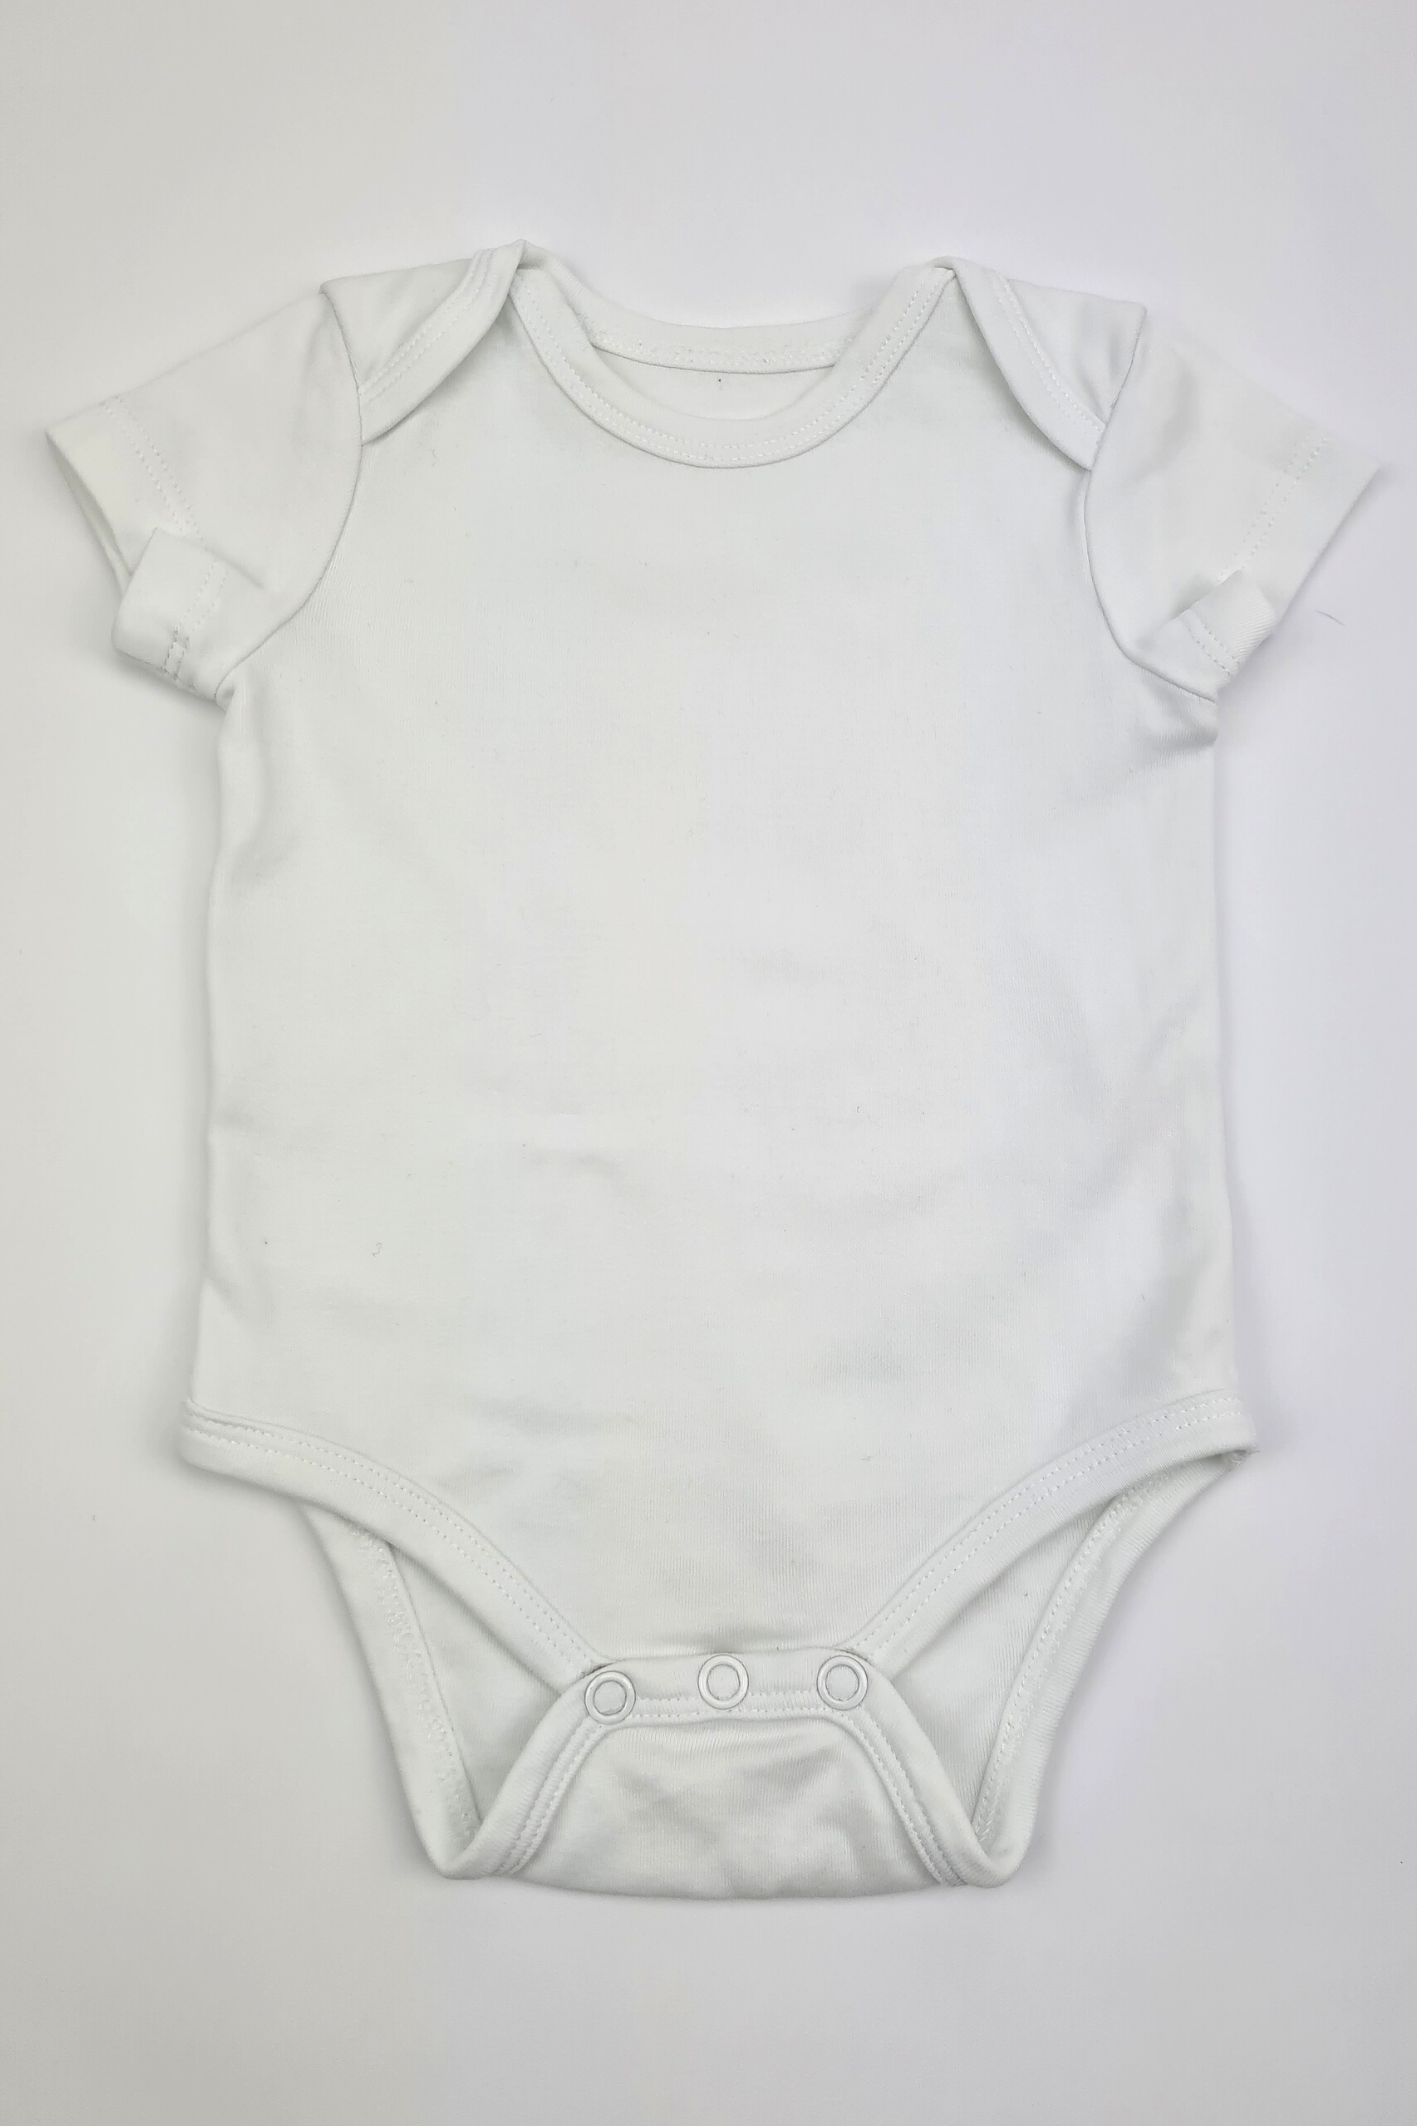 Neugeborene (4,5 kg) – kurzärmliger weißer Body aus 100 % Baumwolle (Scottish Baby Box)